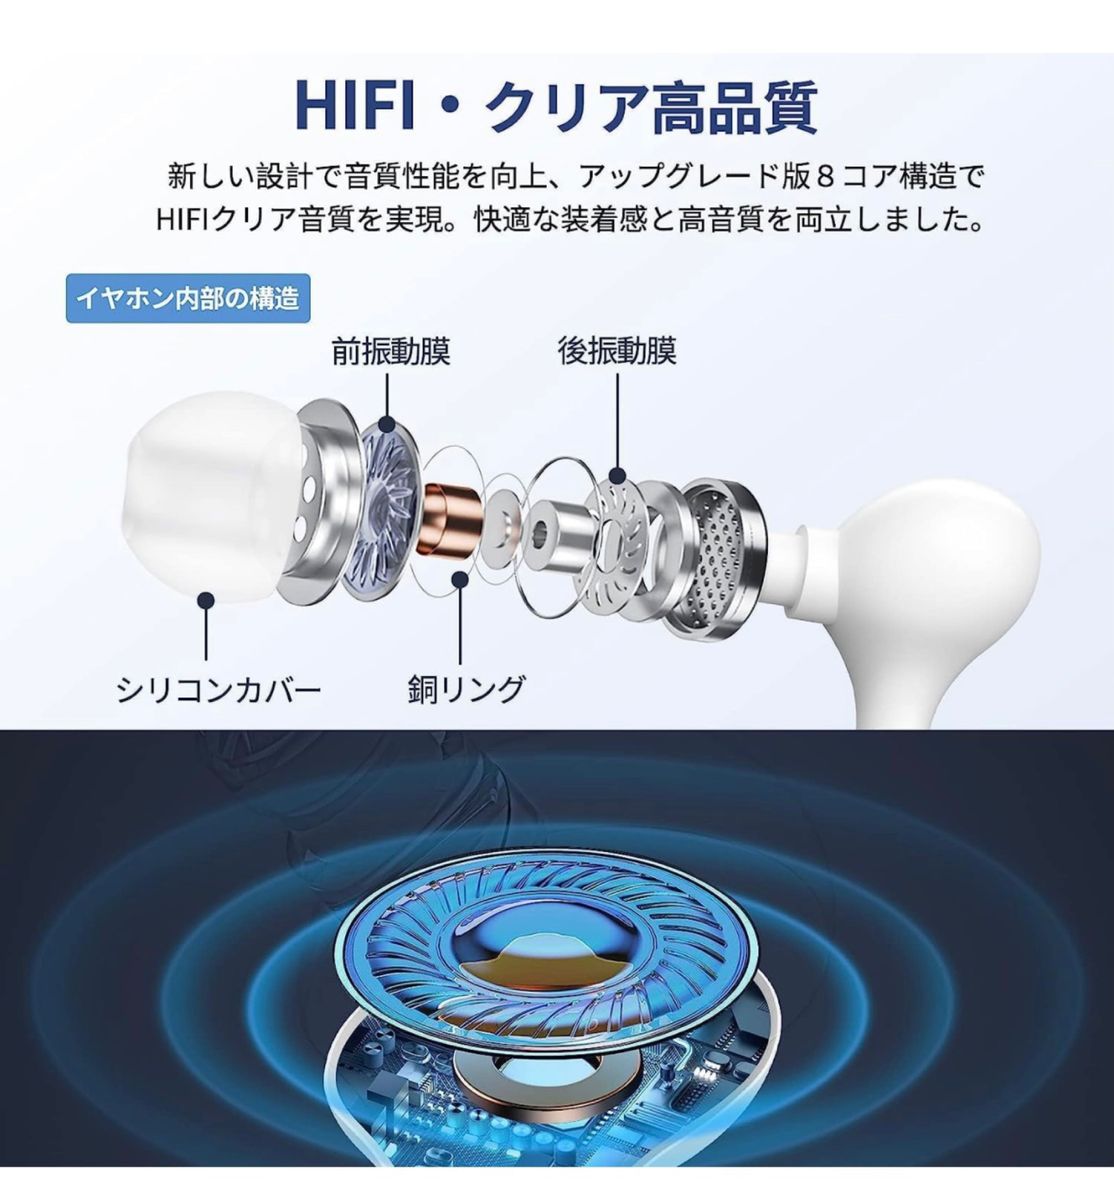 イヤホン 有線 マイク付きイヤホン 3.5mm イヤホン HiFi 通話可能 有線